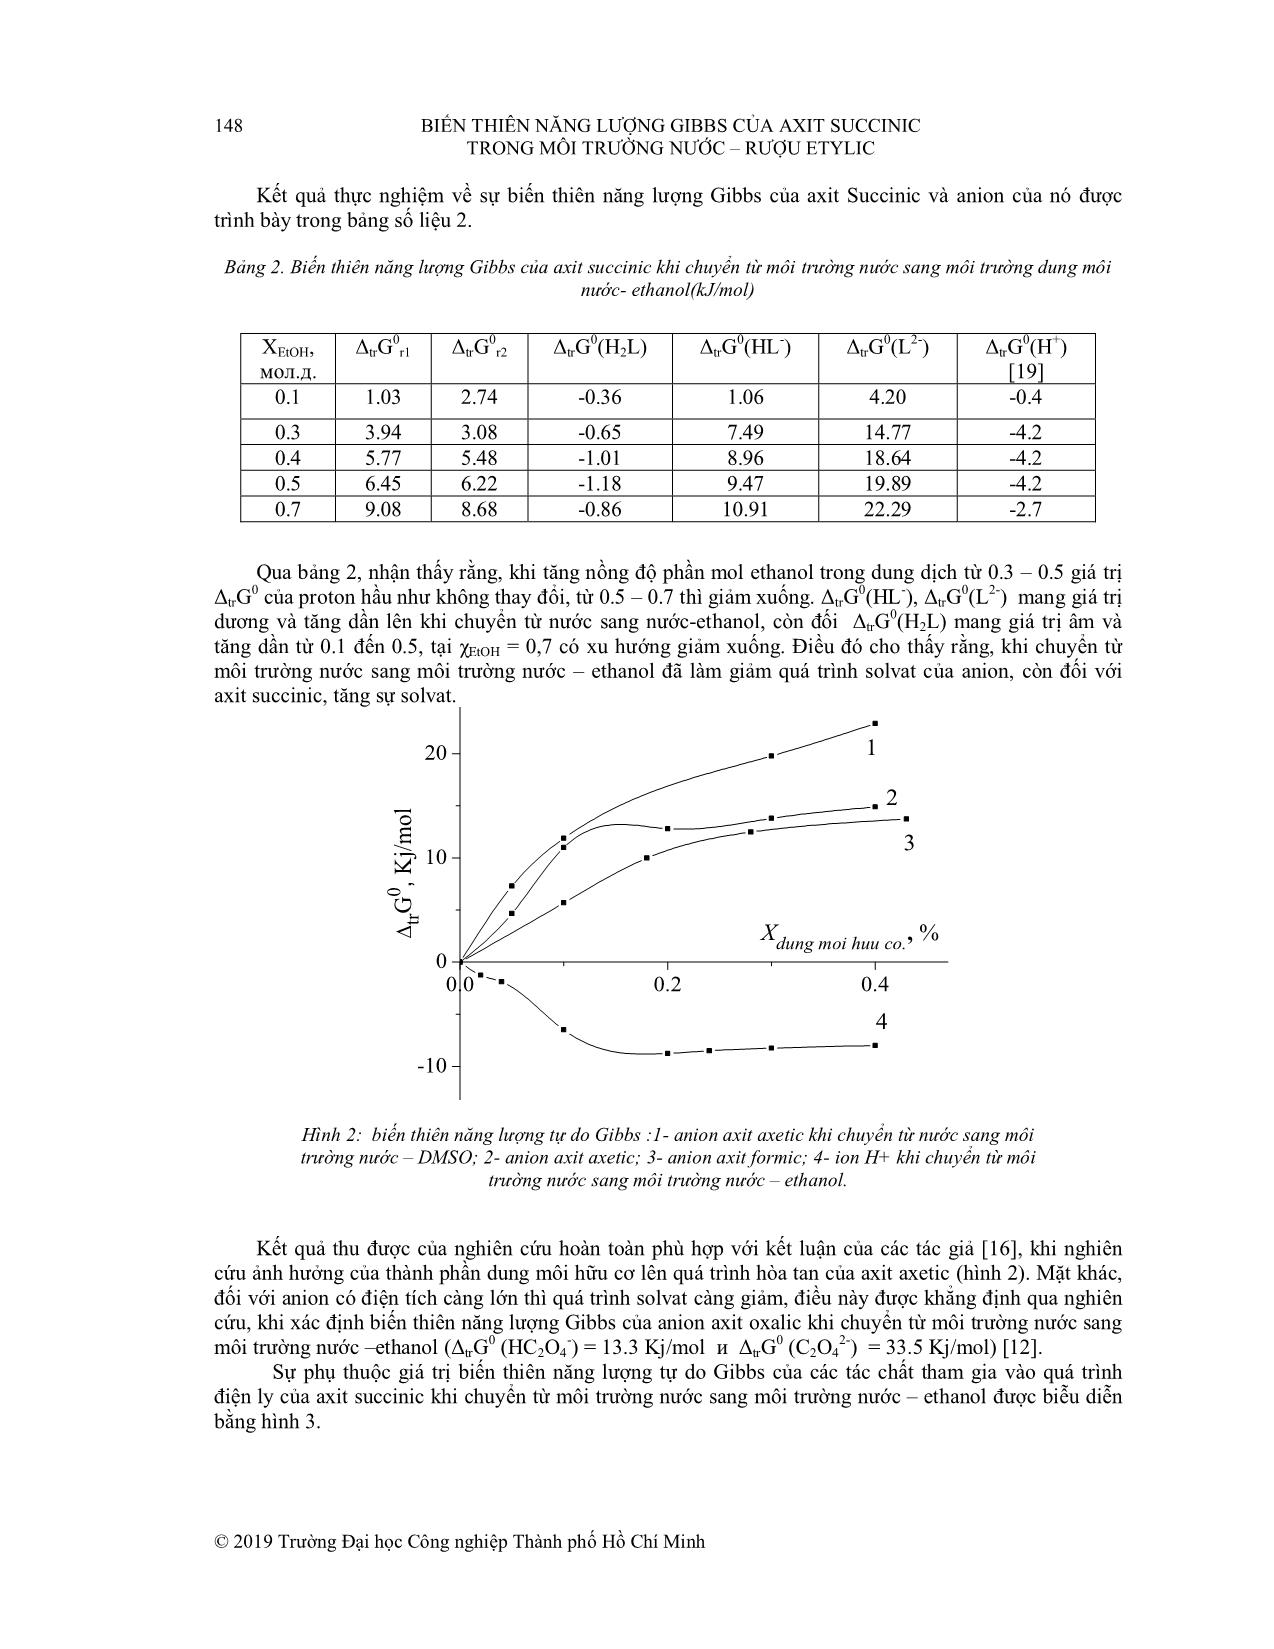 Biến thiên năng lượng gibbs của axit succinic trong môi trường nước - rượu etylic trang 5